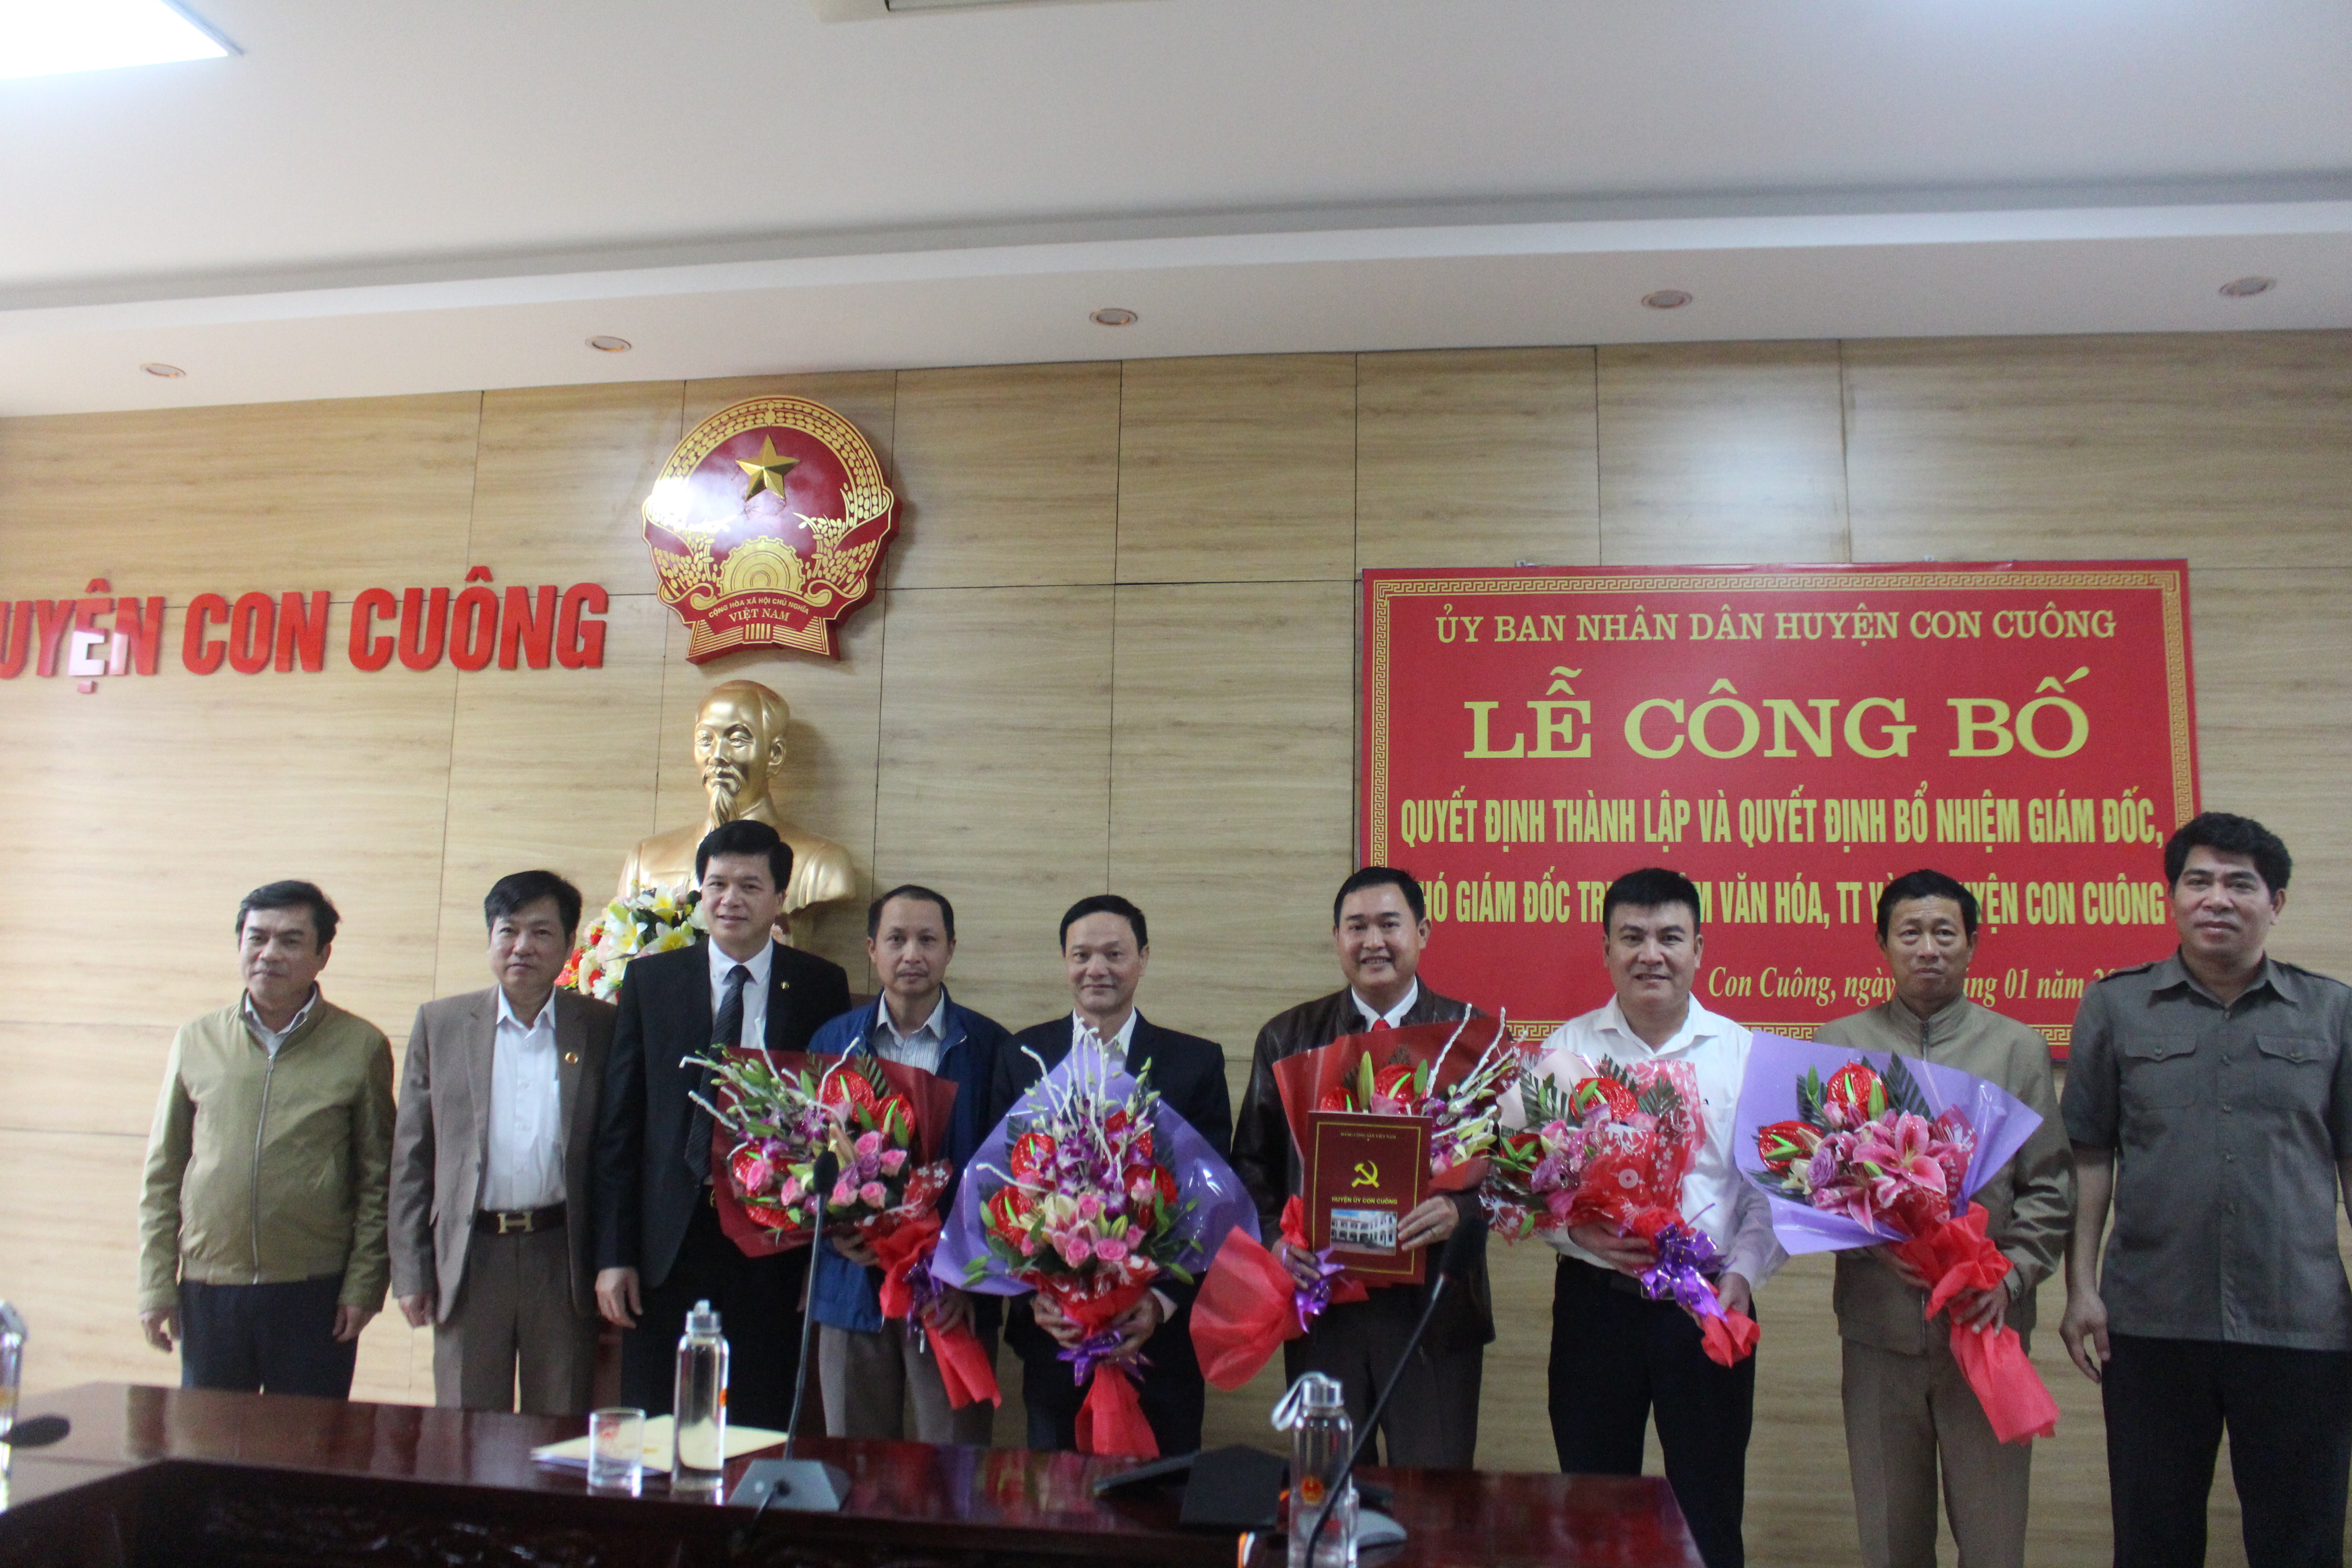  Lãnh đạo huyện Con Cuông trao quyết định thành lập Chi bộ Trung tâm văn hóa thể thao và truyền thông huyện Con Cuông.